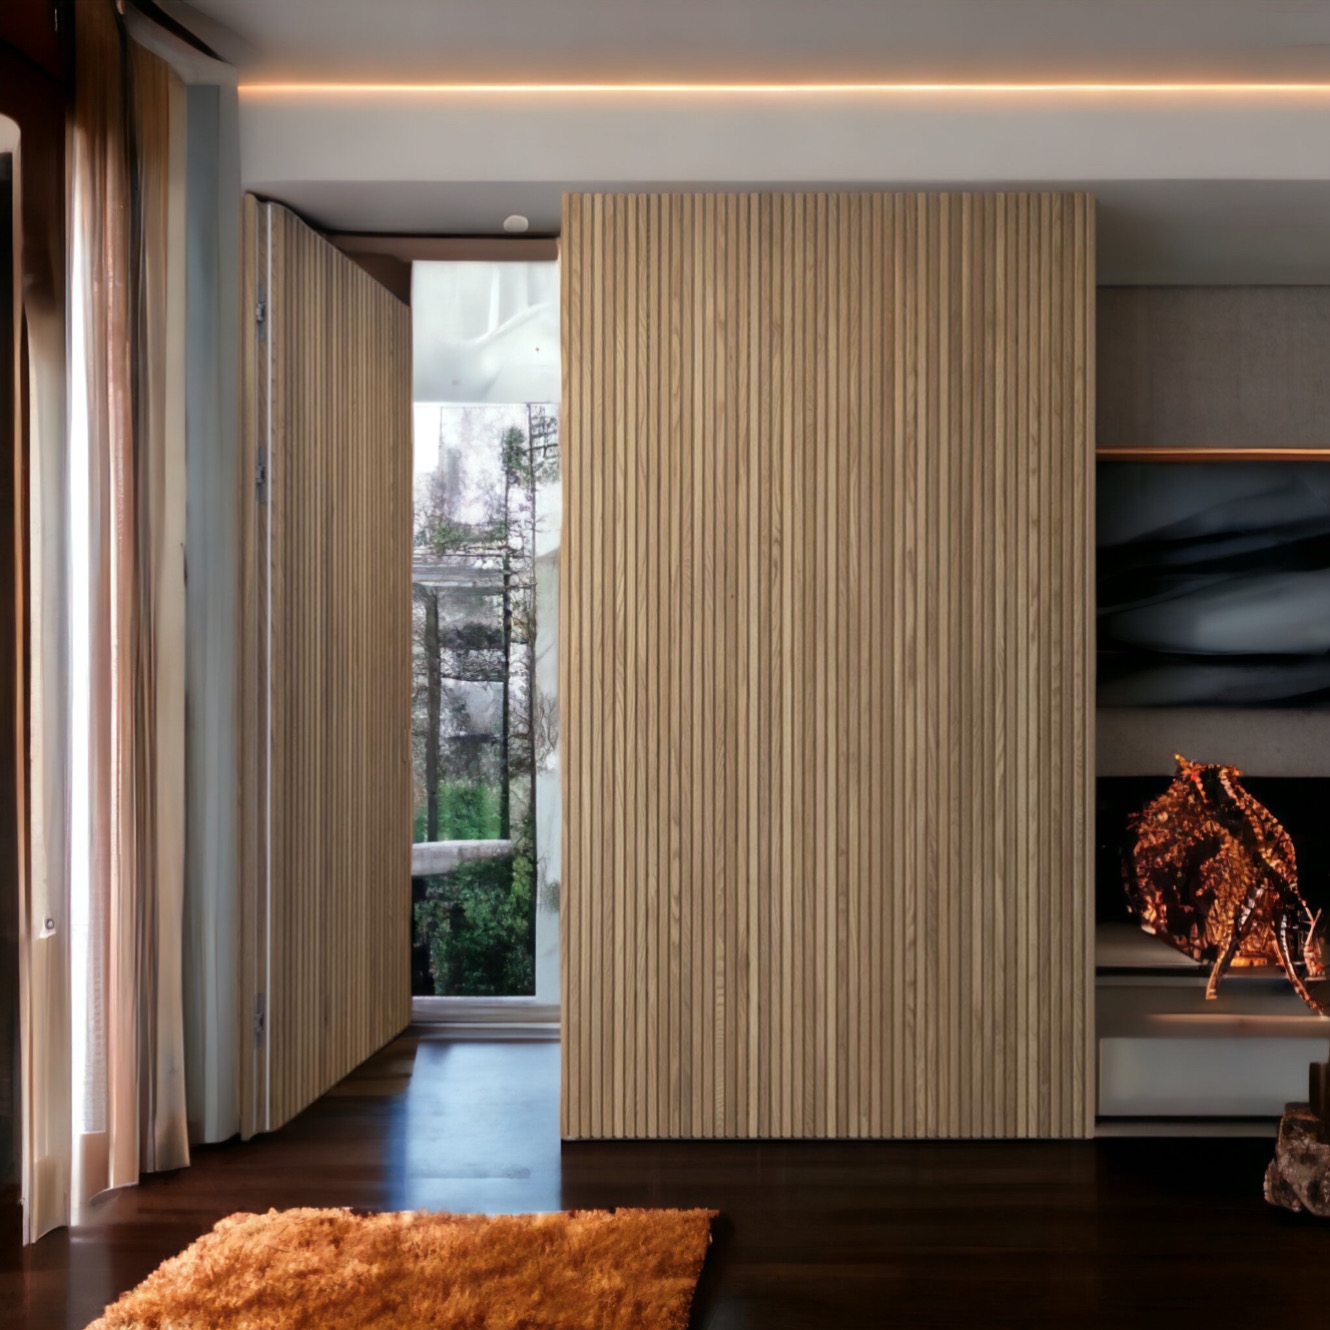 Parete divisoria con porta scomparsa e rivestimento in listelli di legno  divide gli ambienti - XLAB Design